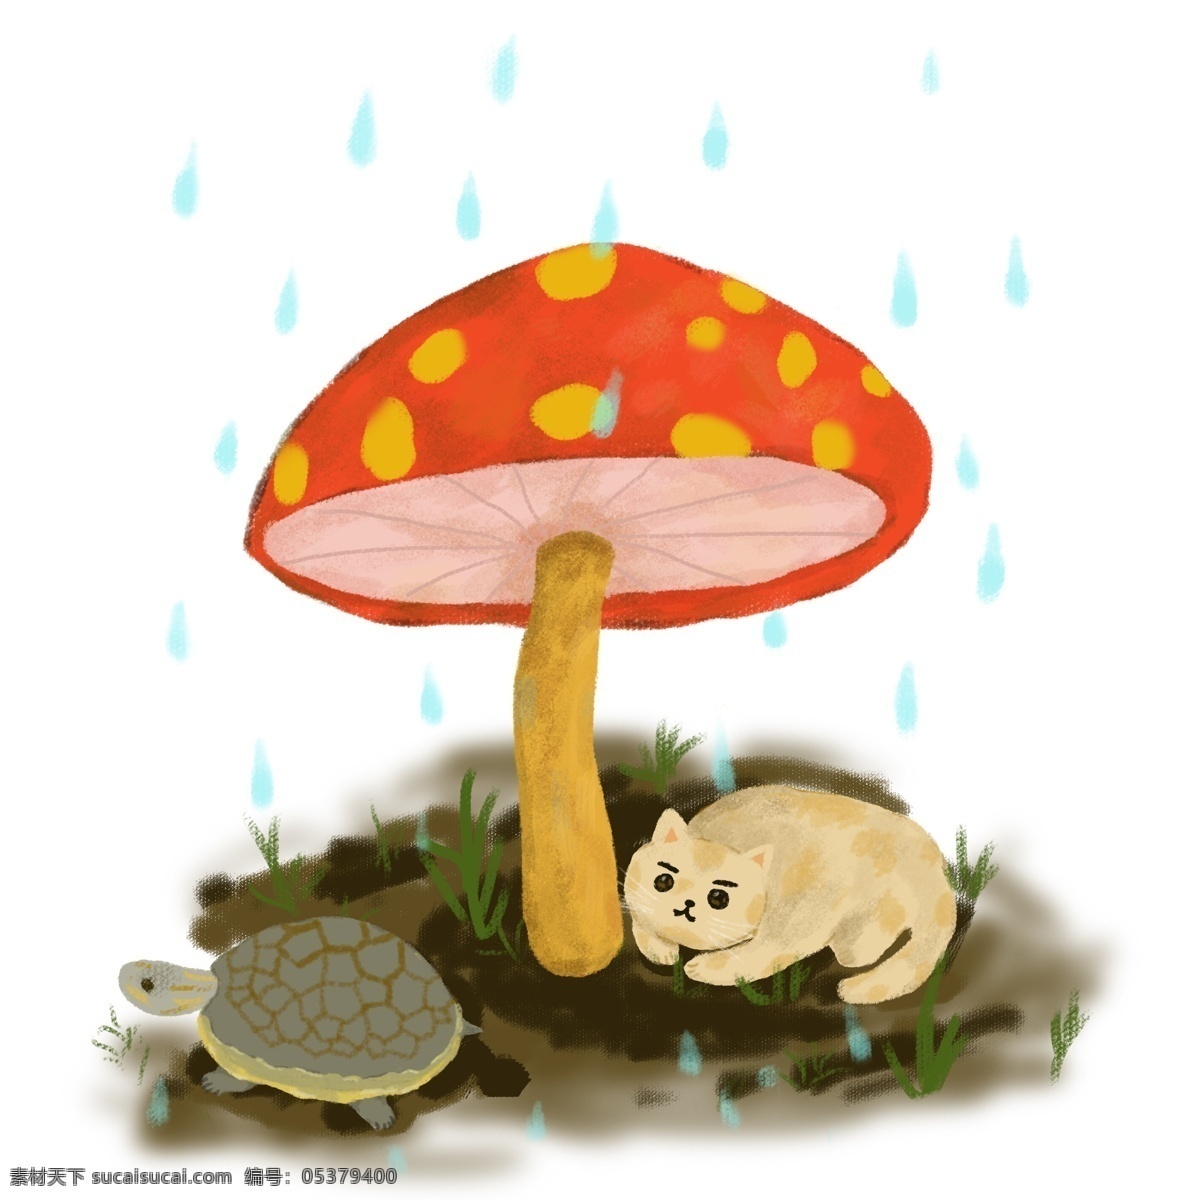 手绘 雨 中大 蘑菇 下 小 动物 元素 雨点 猫咪 乌龟 可爱 故事